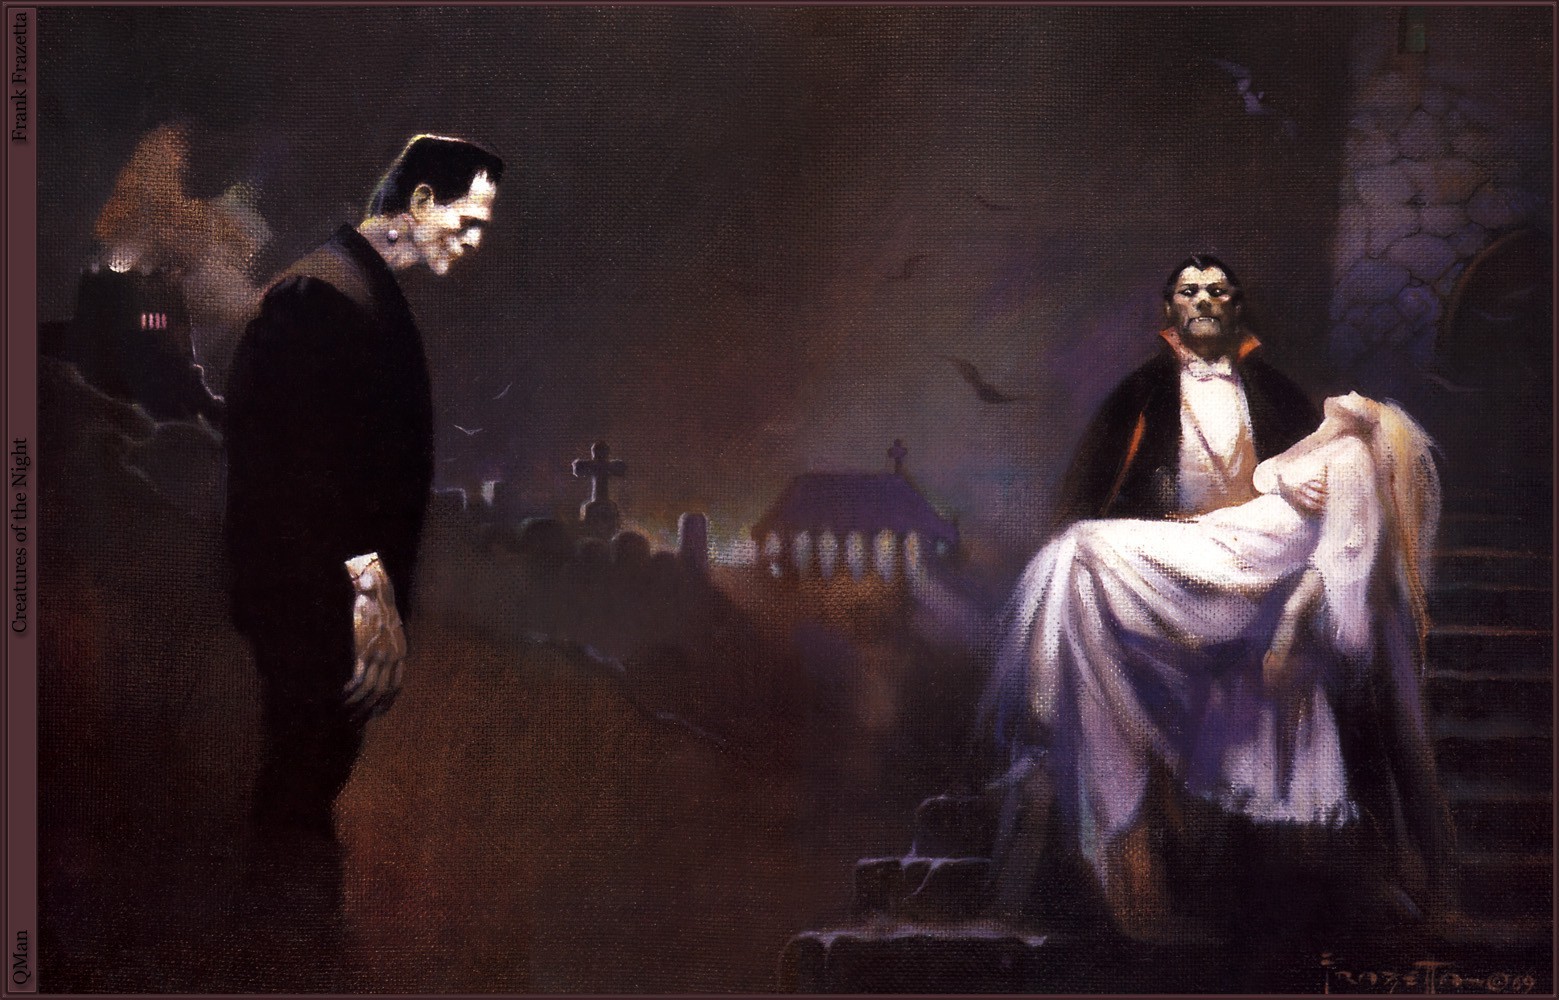 Dracula Monster Of Frankenstein Vampires Artwork 1559x1000